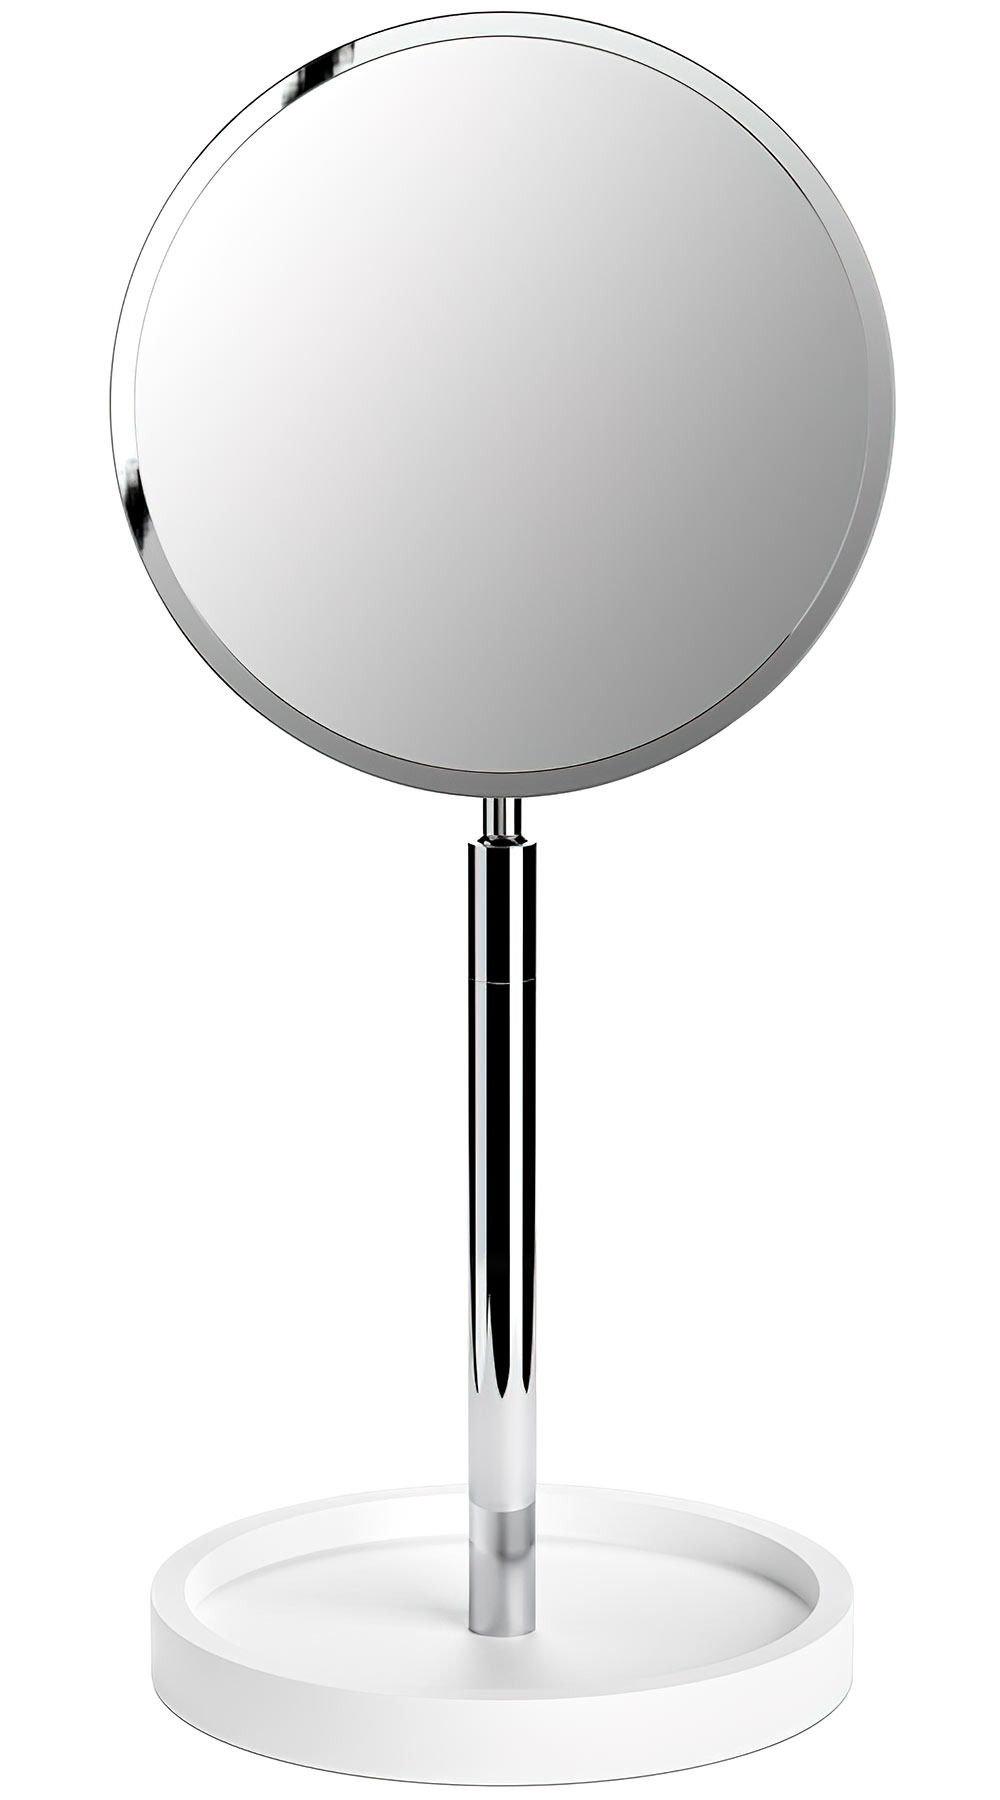 Decor Walther Stone 0972454 Косметическое зеркало настольное 4X (белный/хром)